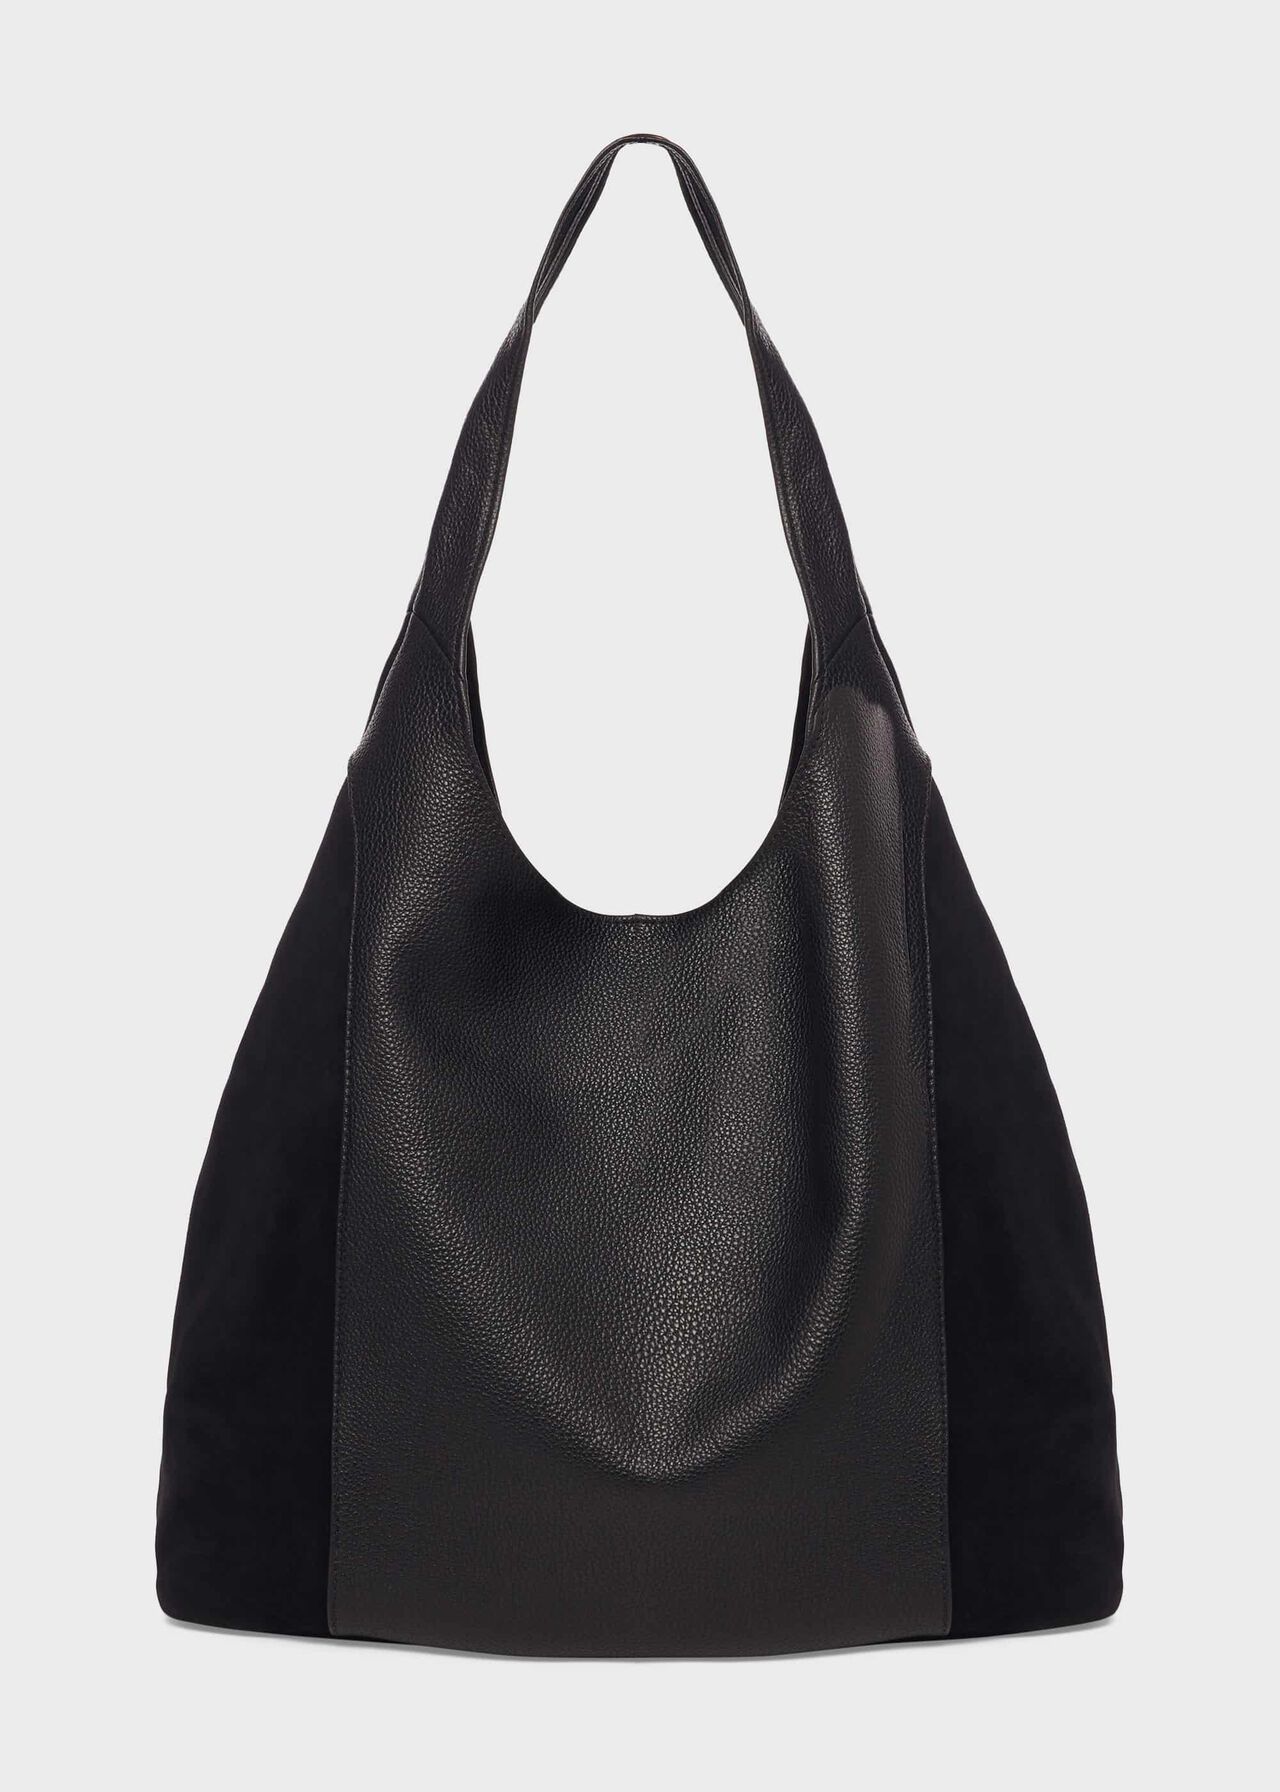 Lula Leather Bag, Black, hi-res